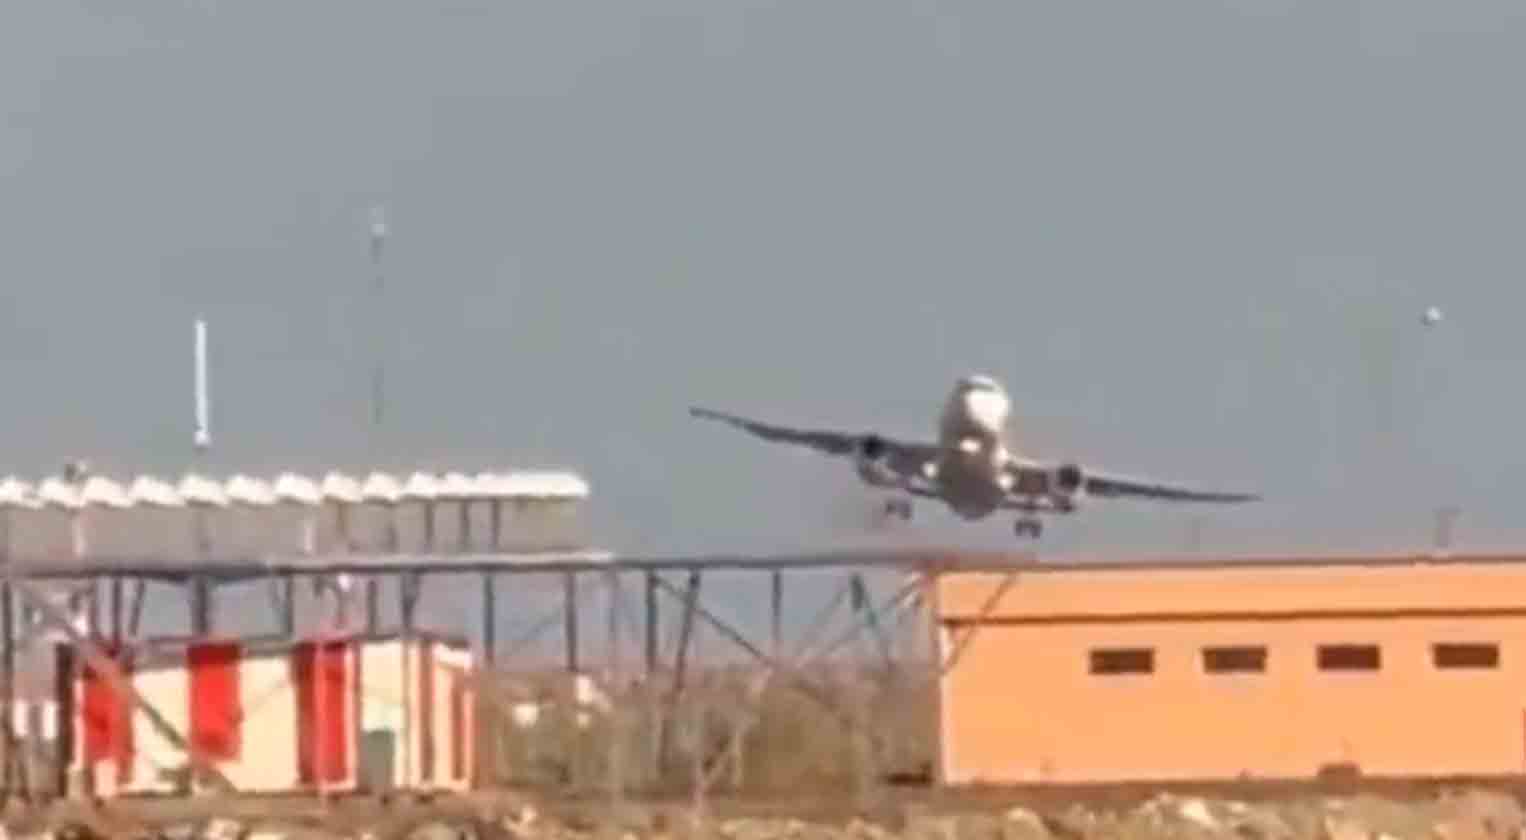 Video ukazuje napjatý okamžik, kdy letadlo Turkish Airlines zkouší přistát na letišti Ordu-Giresun. Foto a video: twitter @HavaForum 